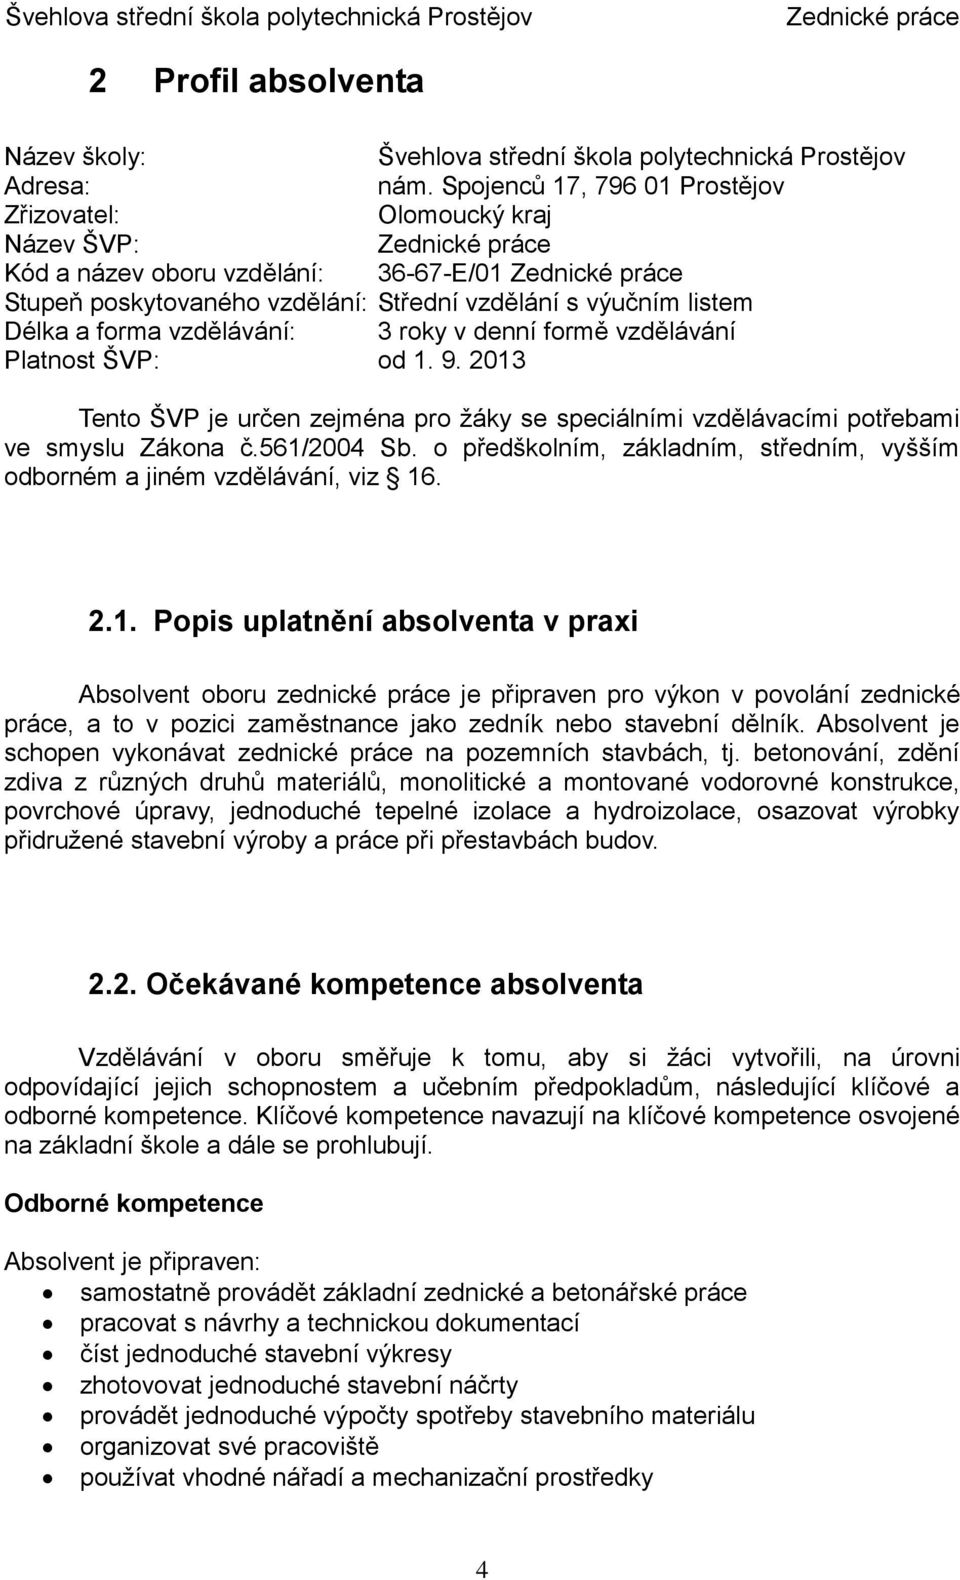 roky v denní formě vzdělávání Platnost ŠVP: od 1. 9. 2013 Tento ŠVP je určen zejména pro žáky se speciálními vzdělávacími potřebami ve smyslu Zákona č.561/2004 Sb.